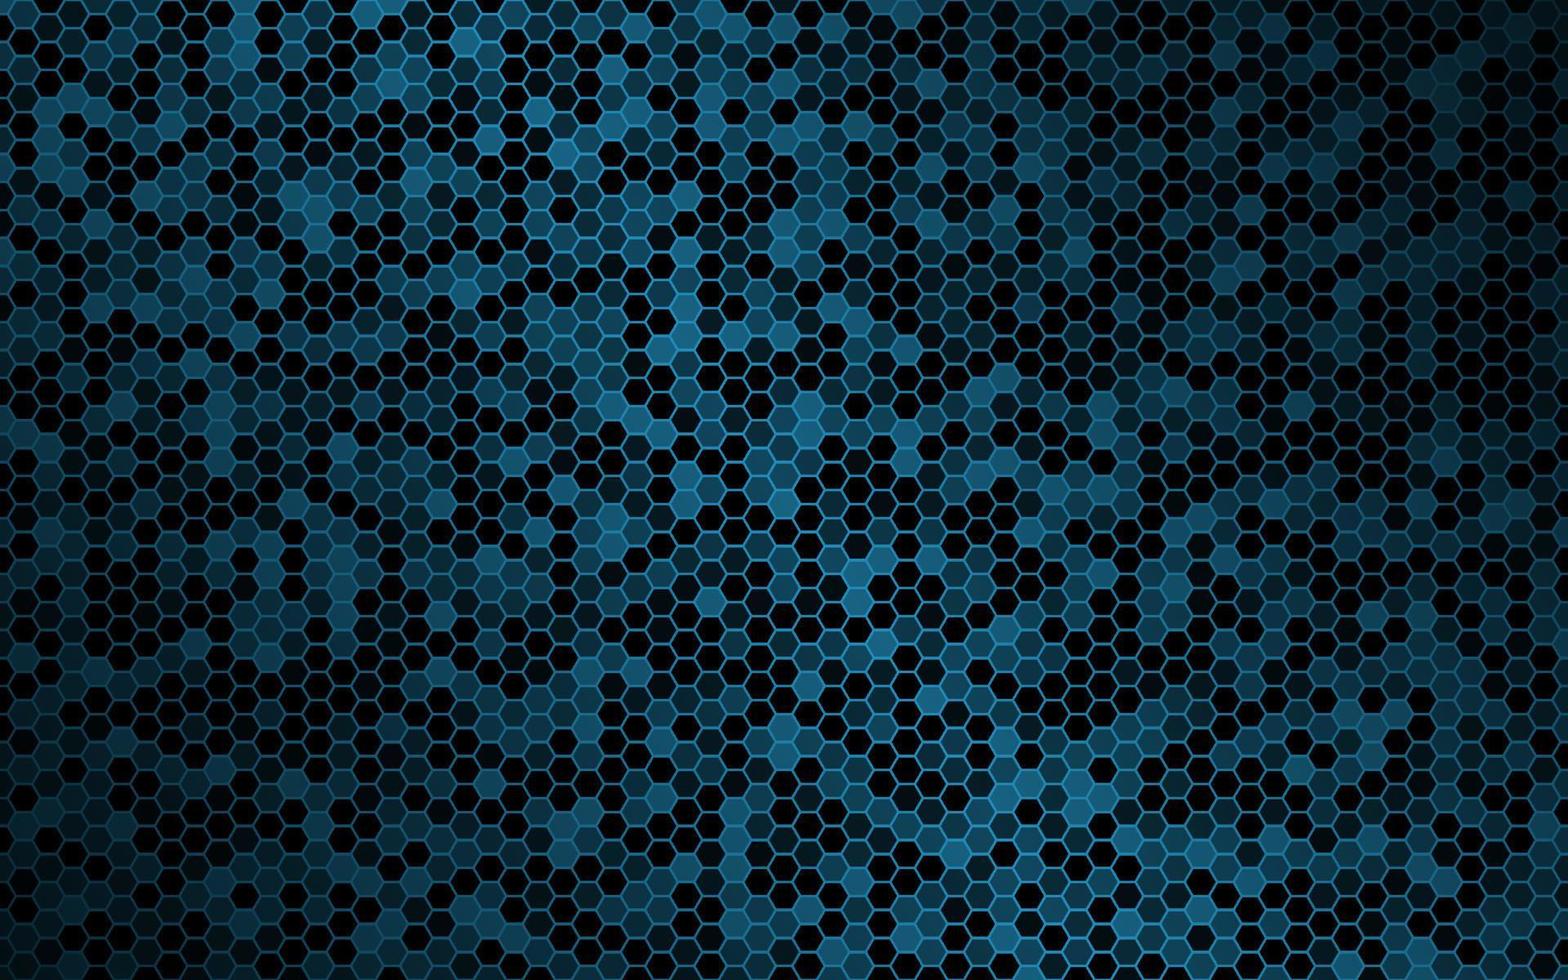 fond de vecteur bleu foncé avec maille hexagonale. texture géométrique moderne. illustration de conception simple